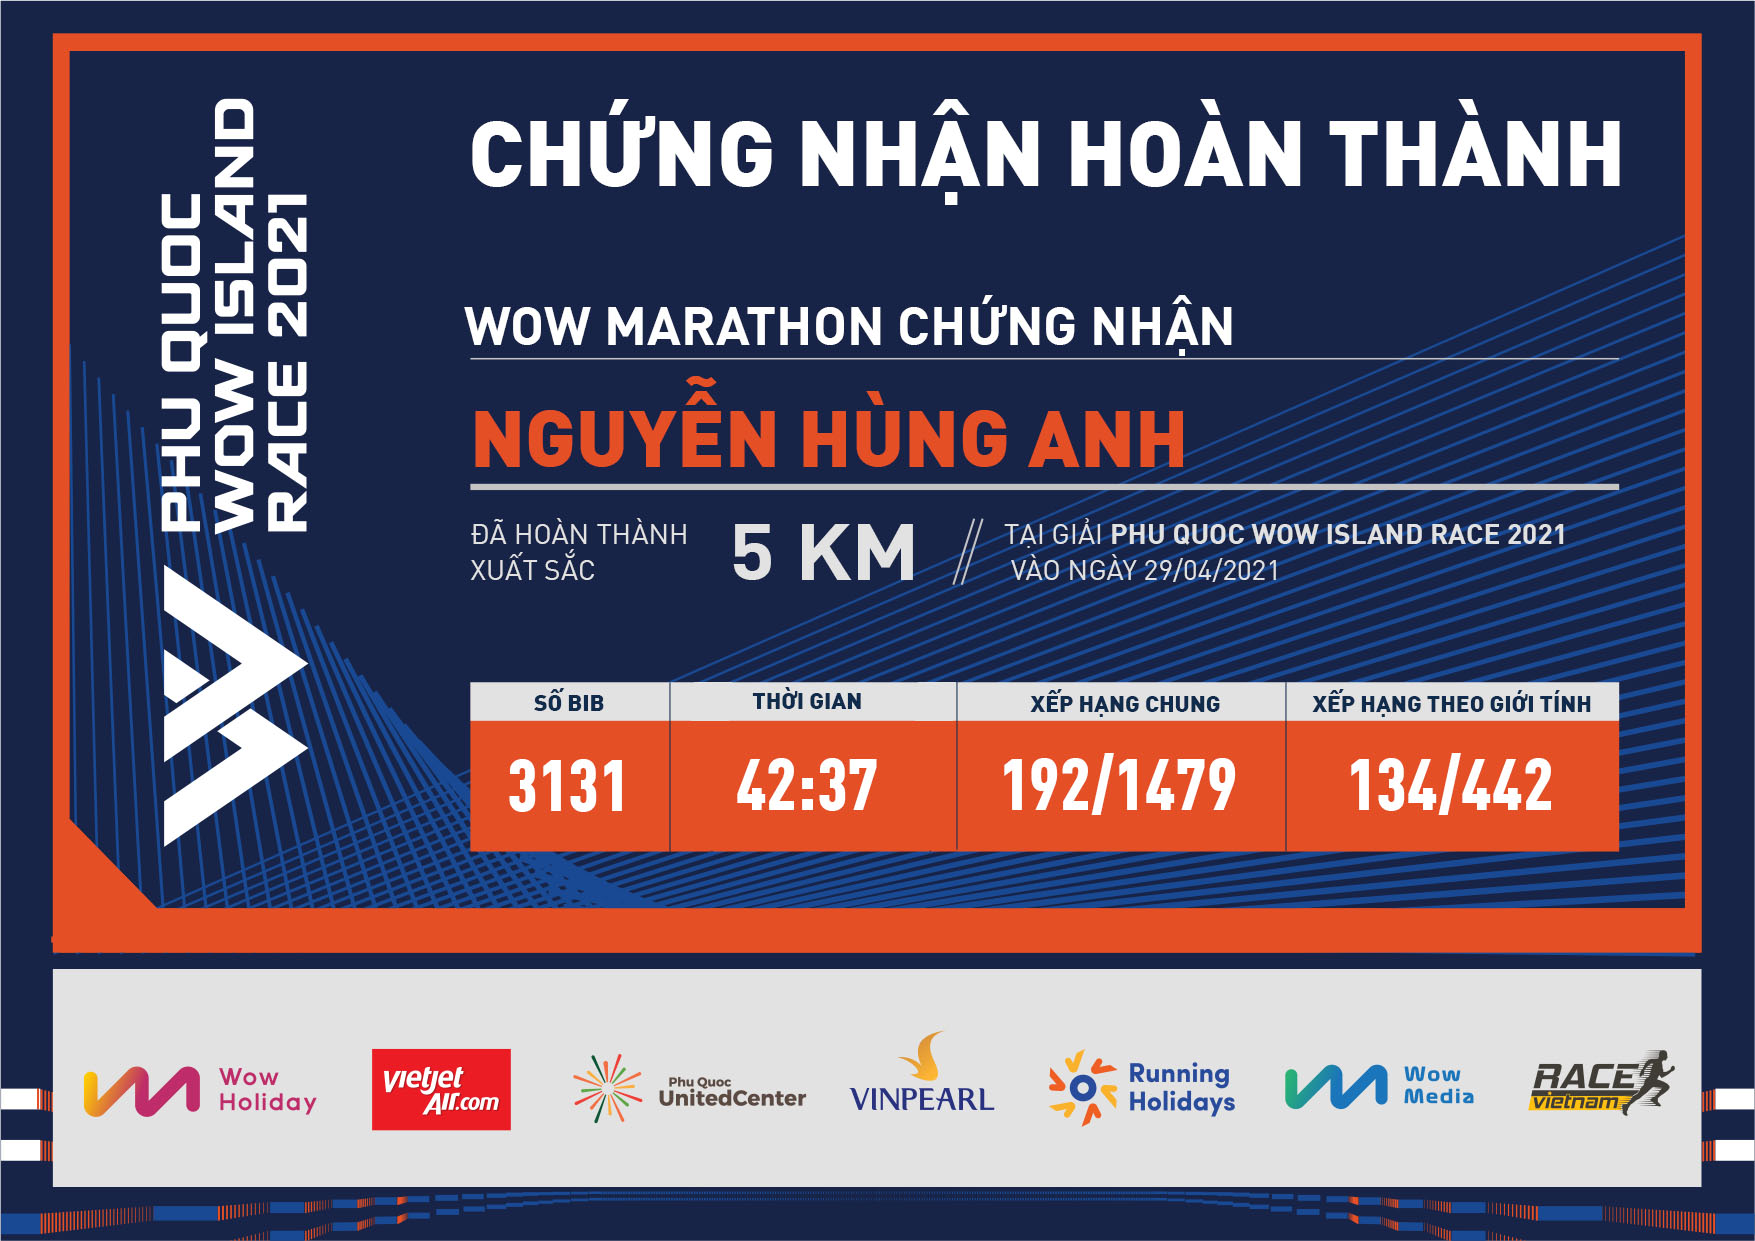 3131 - Nguyễn Hùng Anh